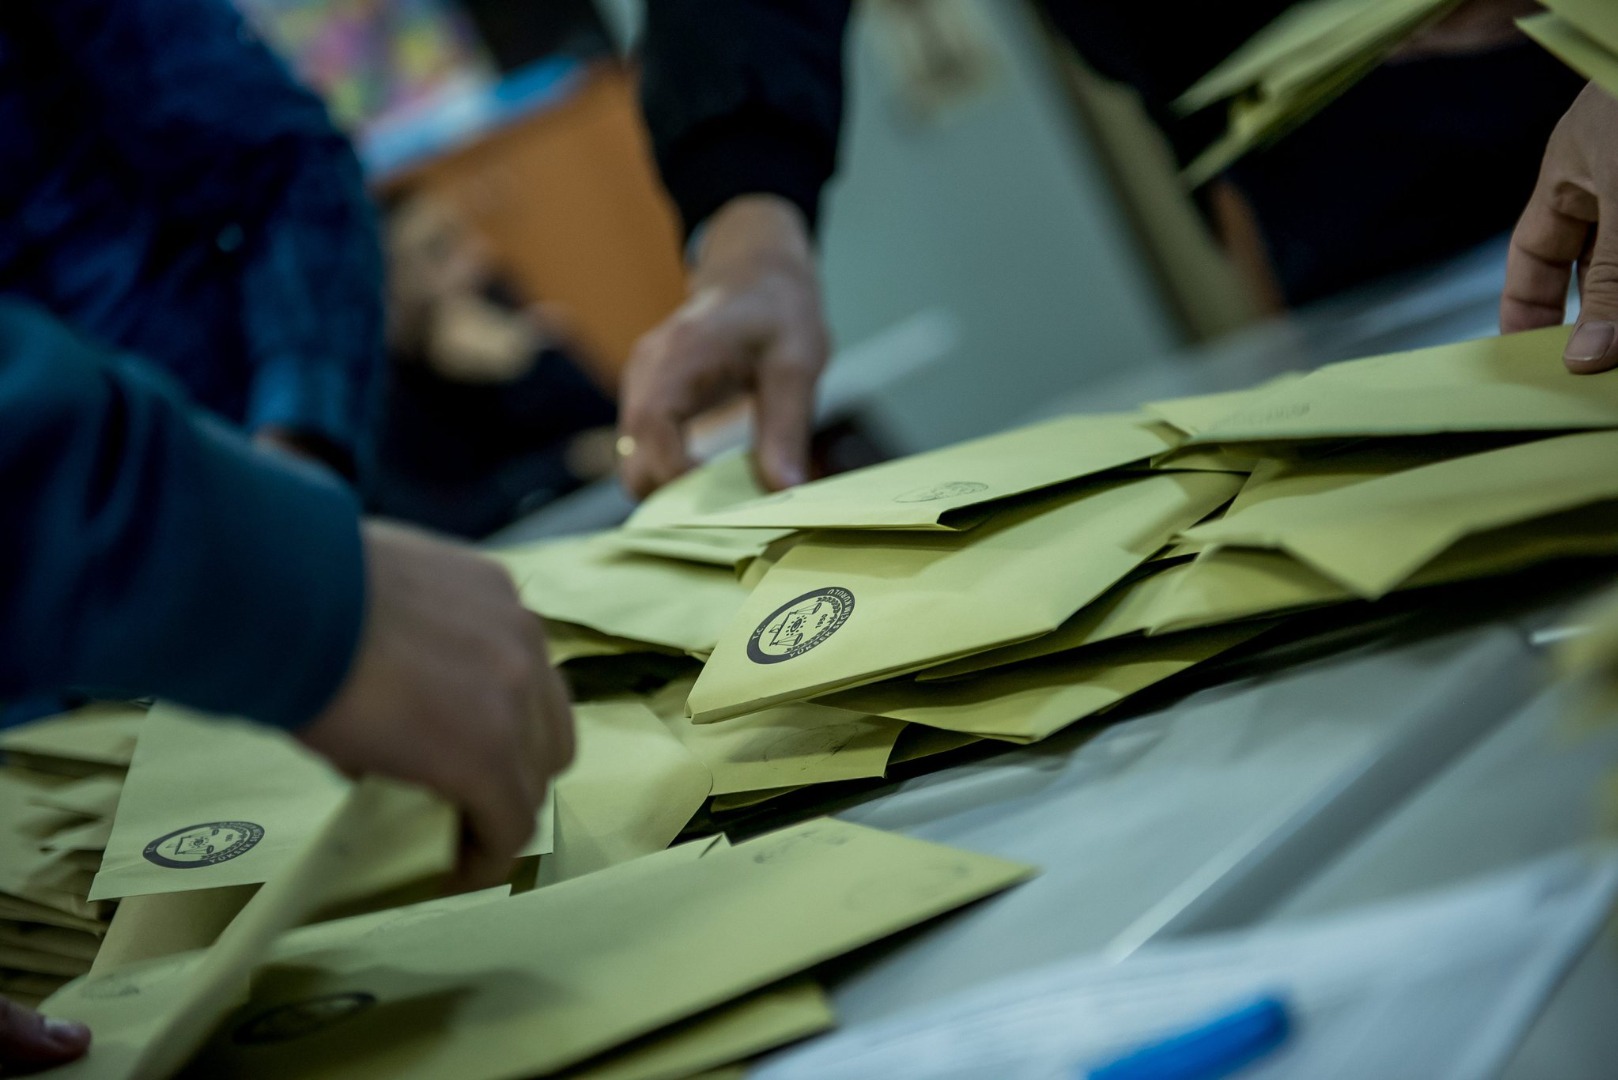 Flaş 'baskın seçim' açıklaması: Eylül ayında duyurabilirler